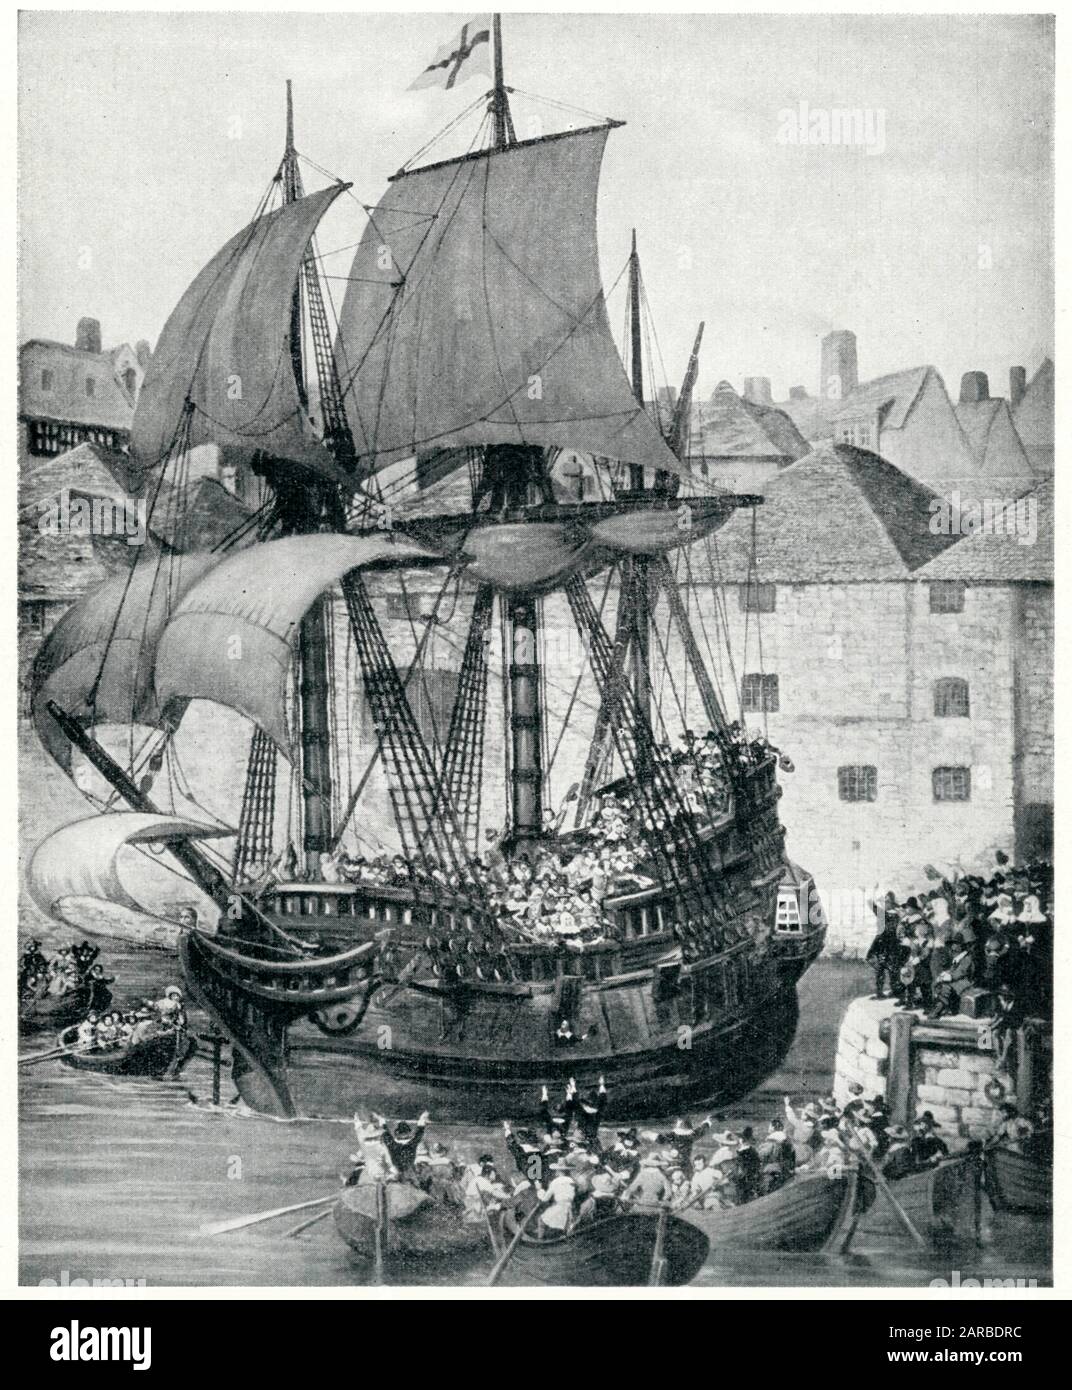 Départ du Mayflower de Plymouth avec 102 hommes, femmes et enfants à bord, pour rechercher la liberté religieuse dans le Nouveau monde. Banque D'Images